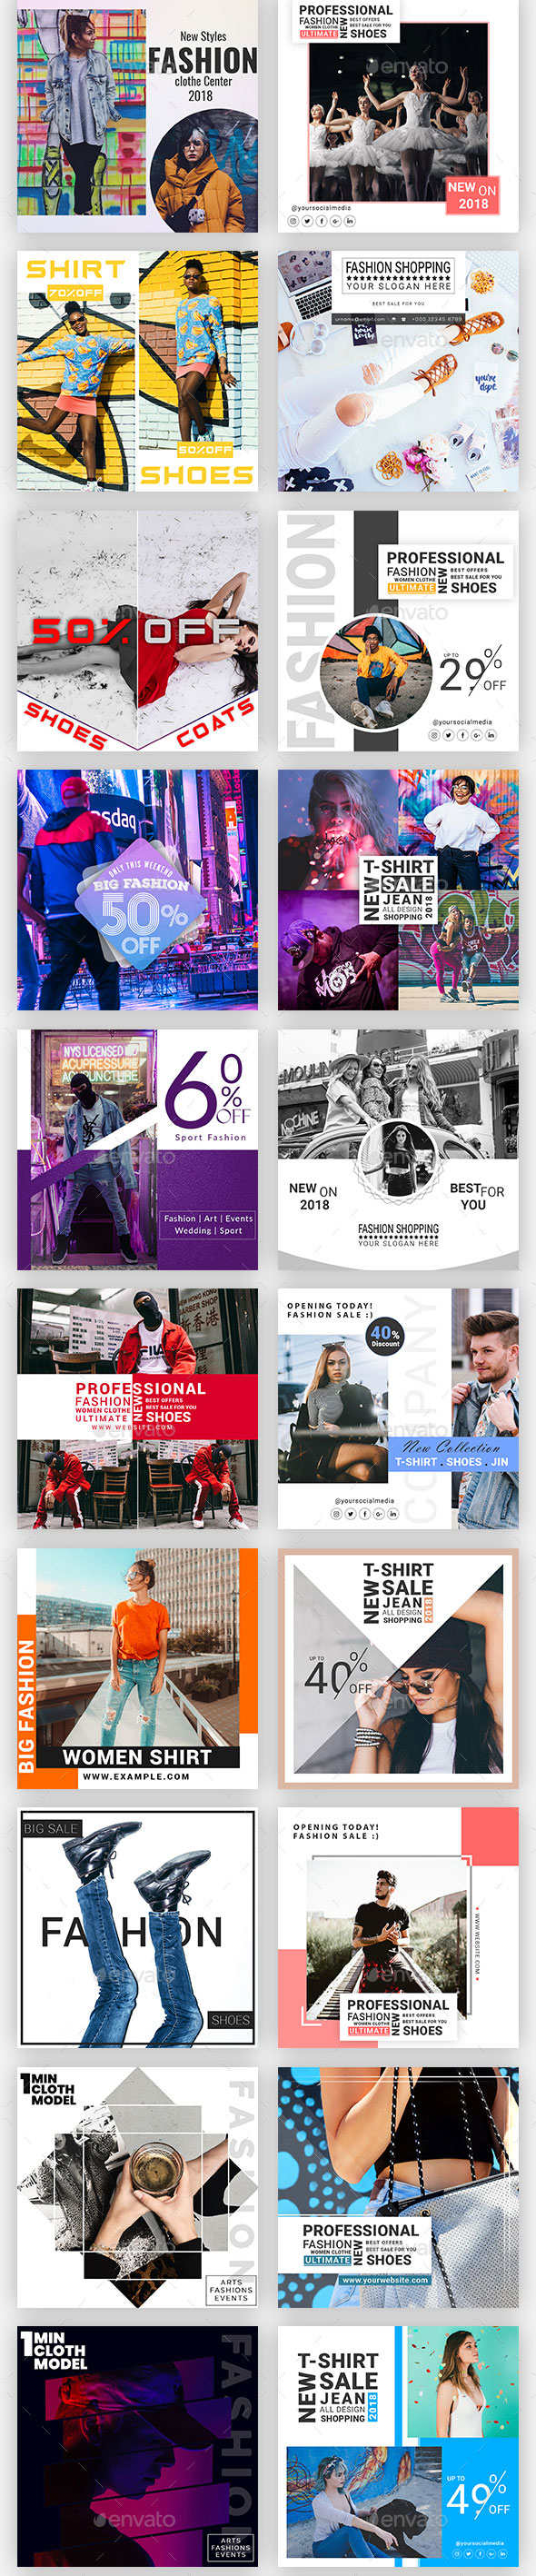 时尚简约的Instagram故事模板16图库精选合辑 Instagram Post & Stories [psd,jpg]插图(5)